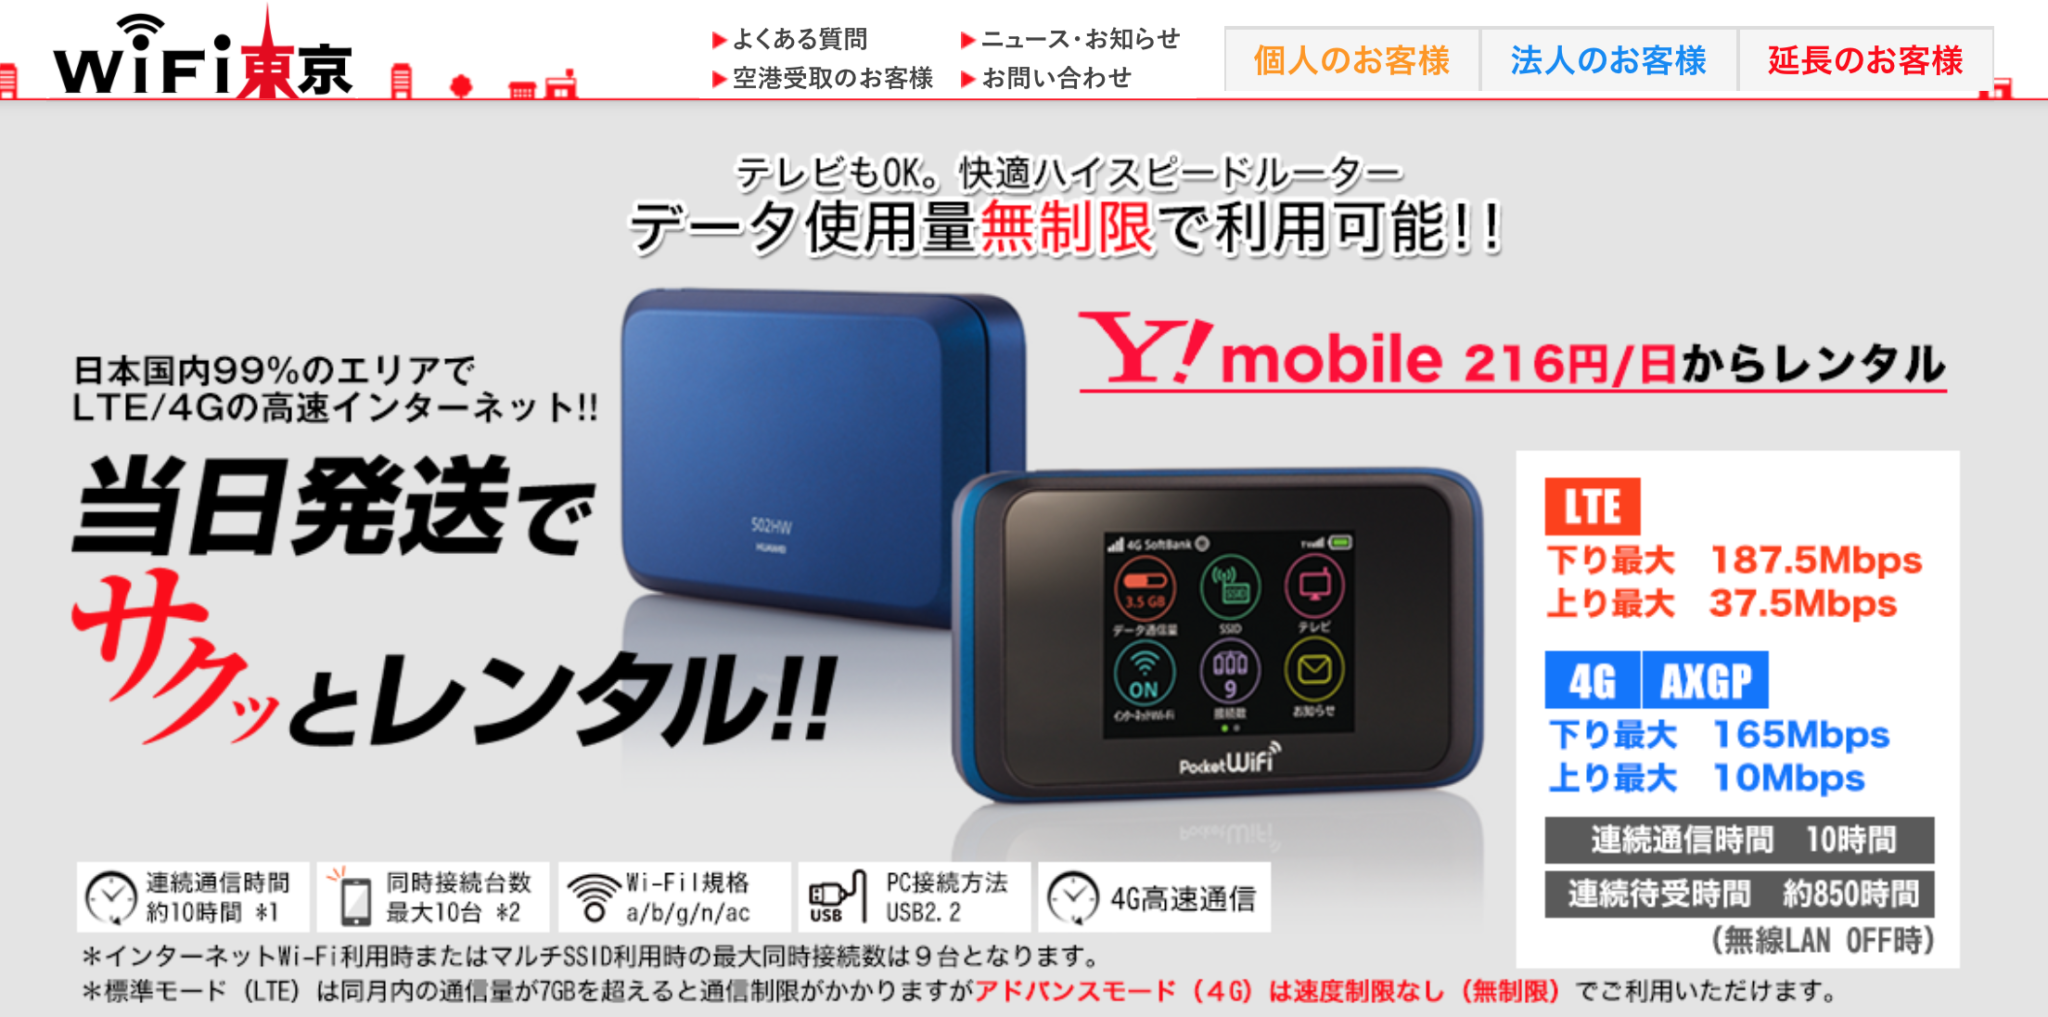 2 成田 空港 ポケット Wifi レンタル 2020